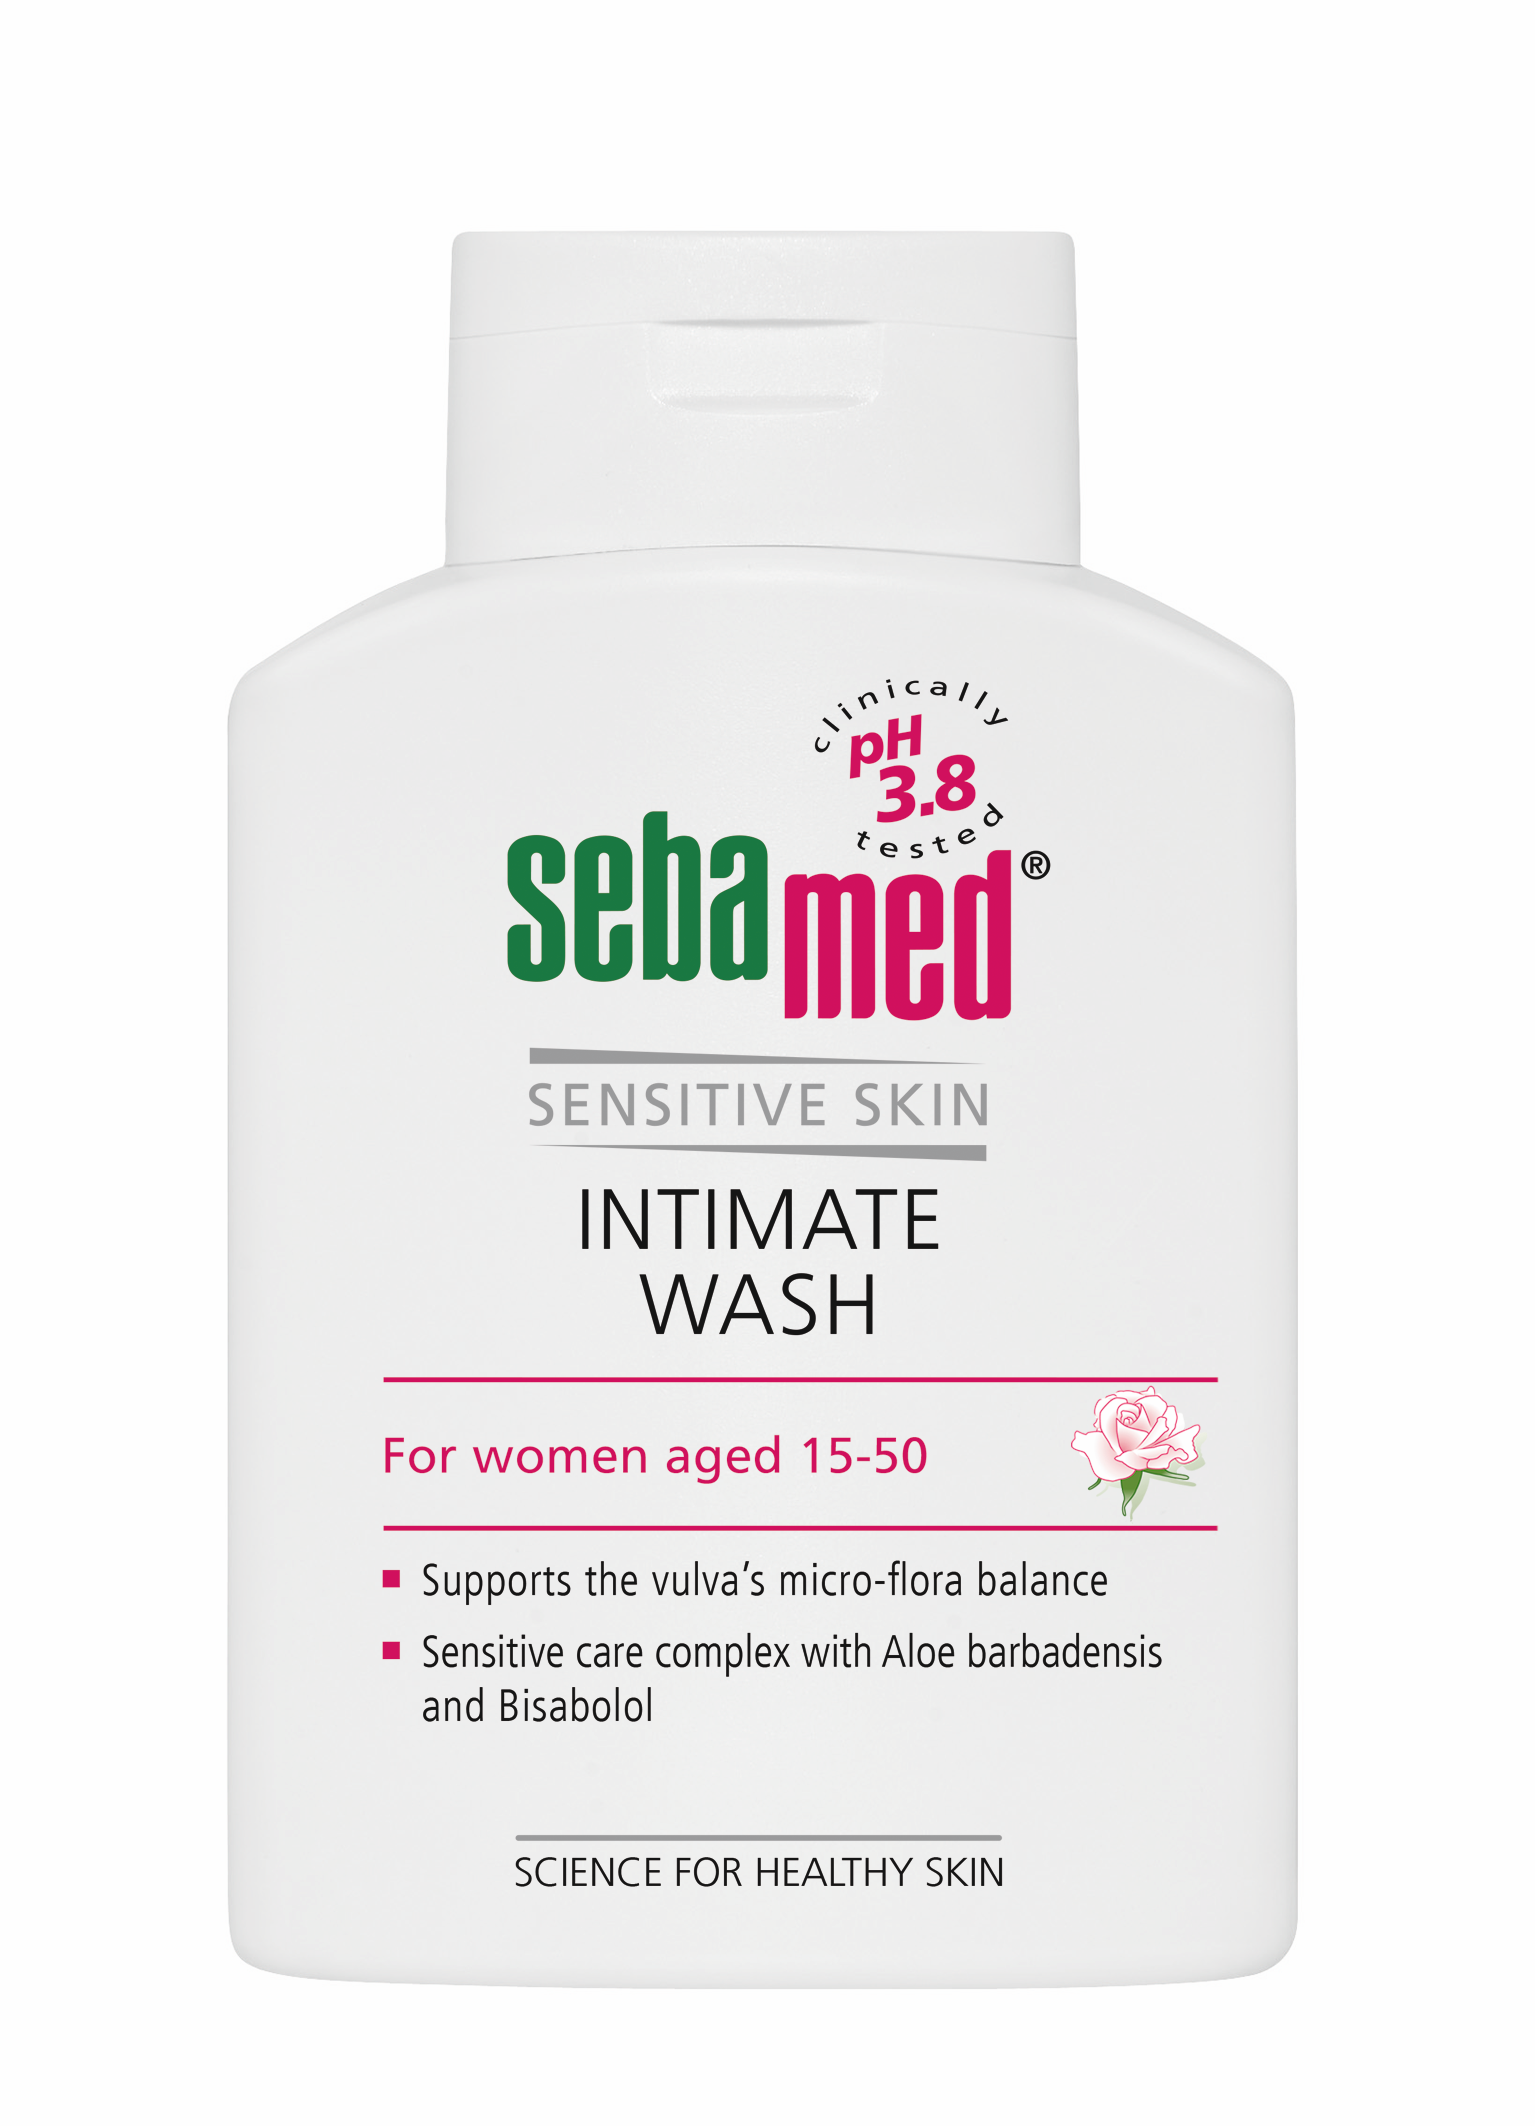 Igienă intimă - Sebamed Sensitive Skin Gel dermatologic pentru igienă intimă feminină (15-50 ani) * 200 ml , clinicafarm.ro